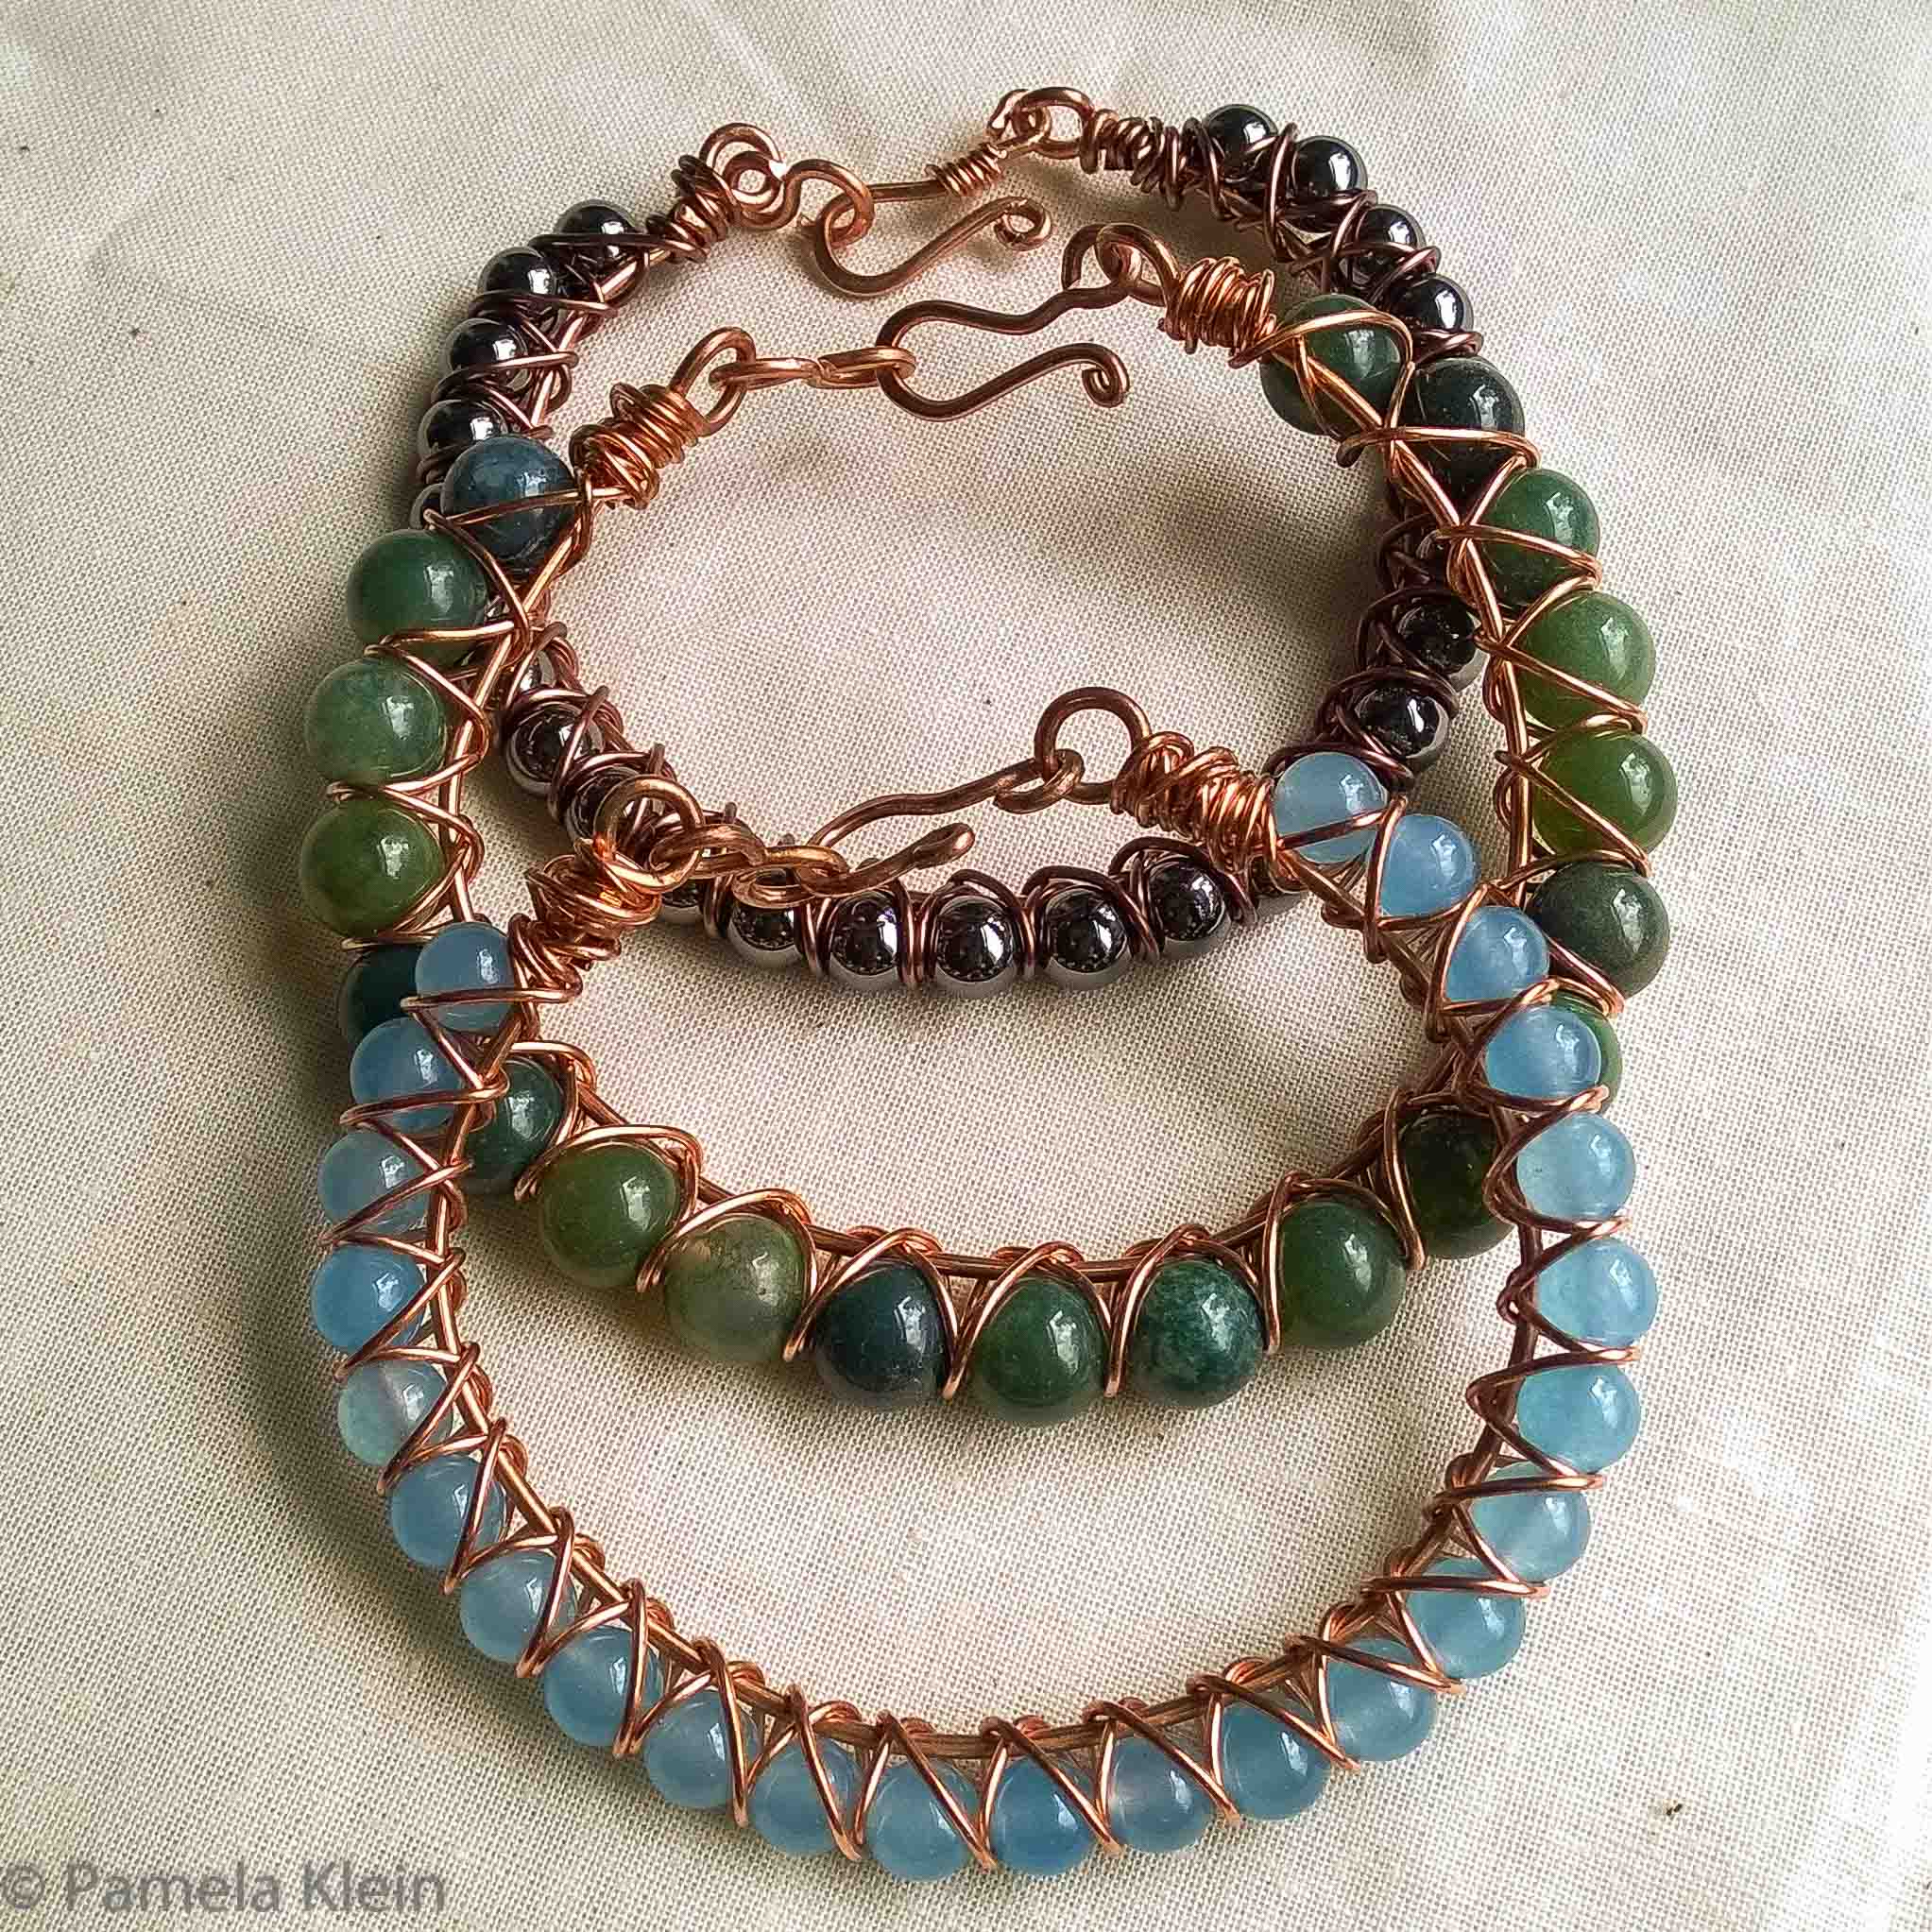 Wire Wrapped Bracelet | How to Make Wire Jewelry | Wire Wrap a Stone